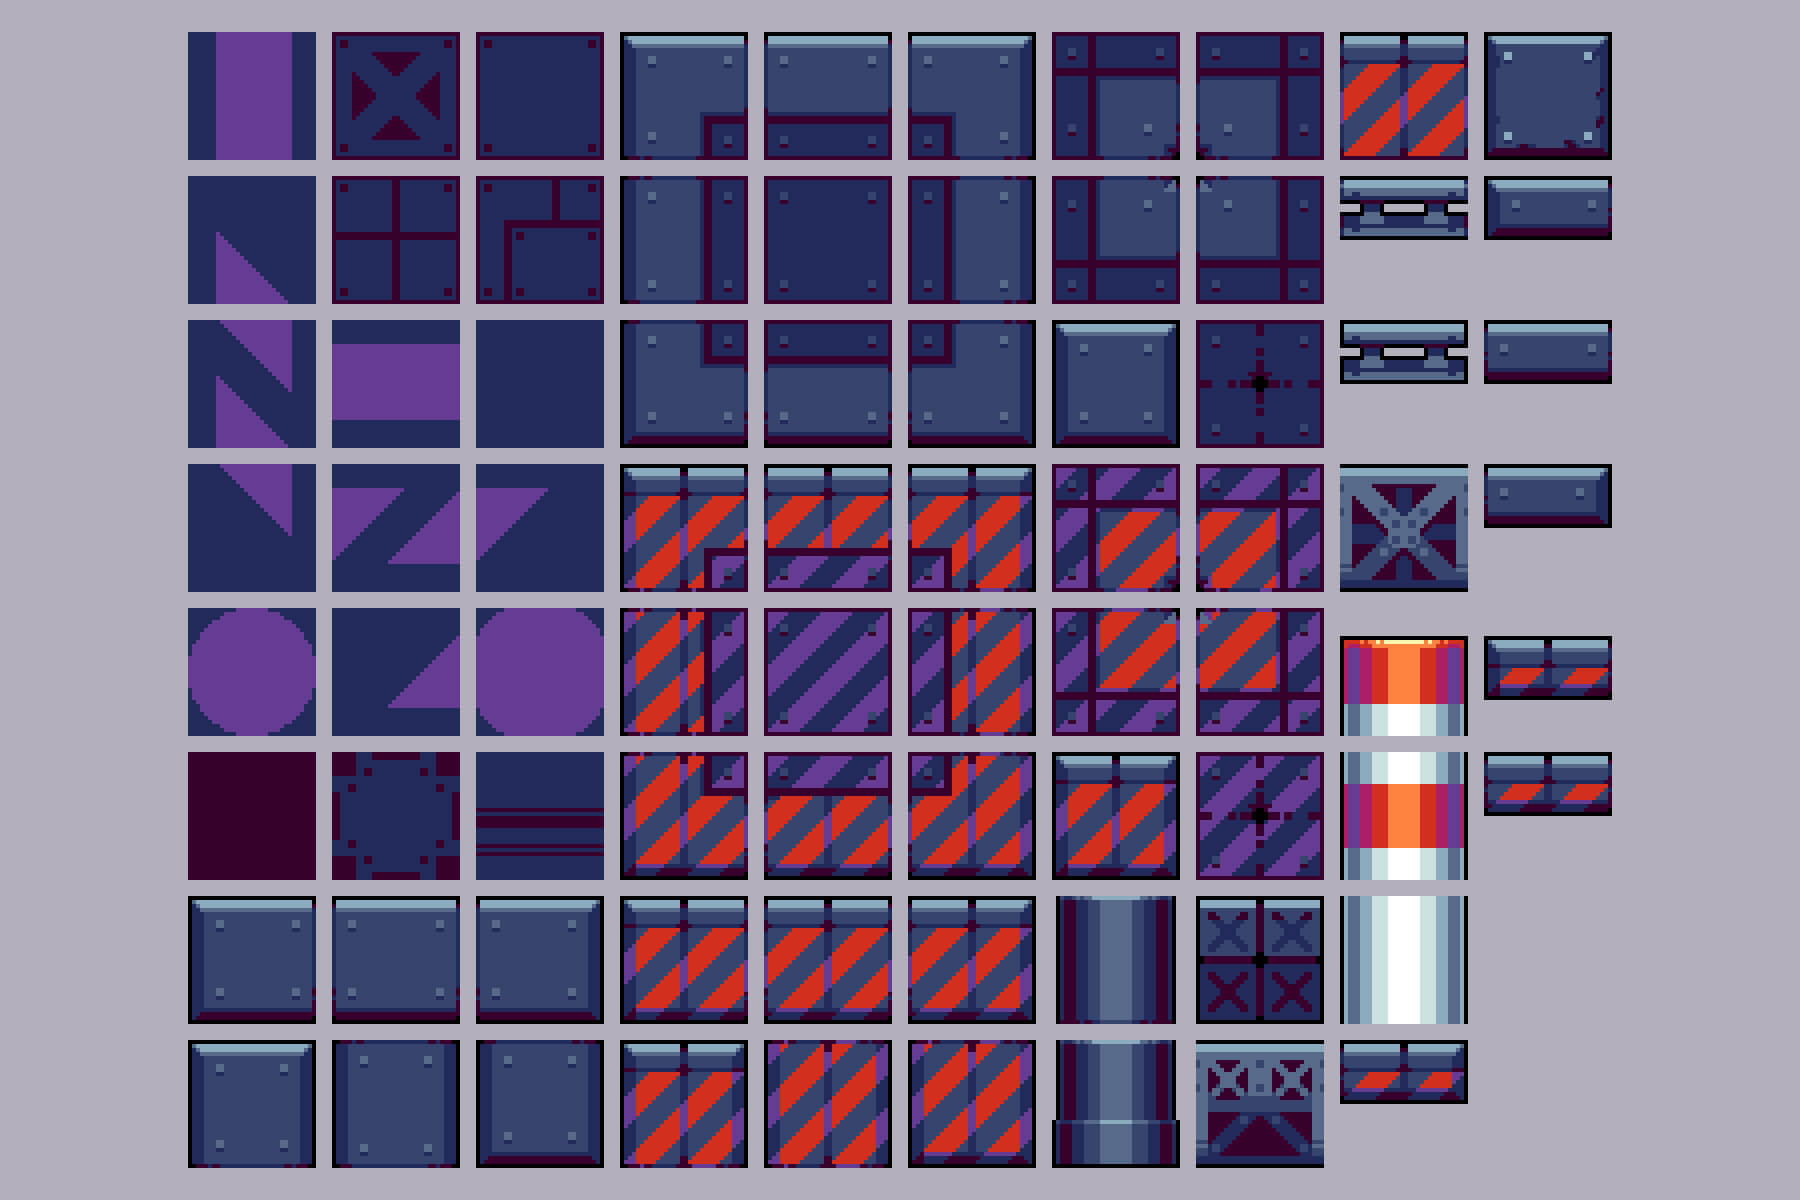 Free Industrial Zone Tileset Pixel Art Download - CraftPix.net